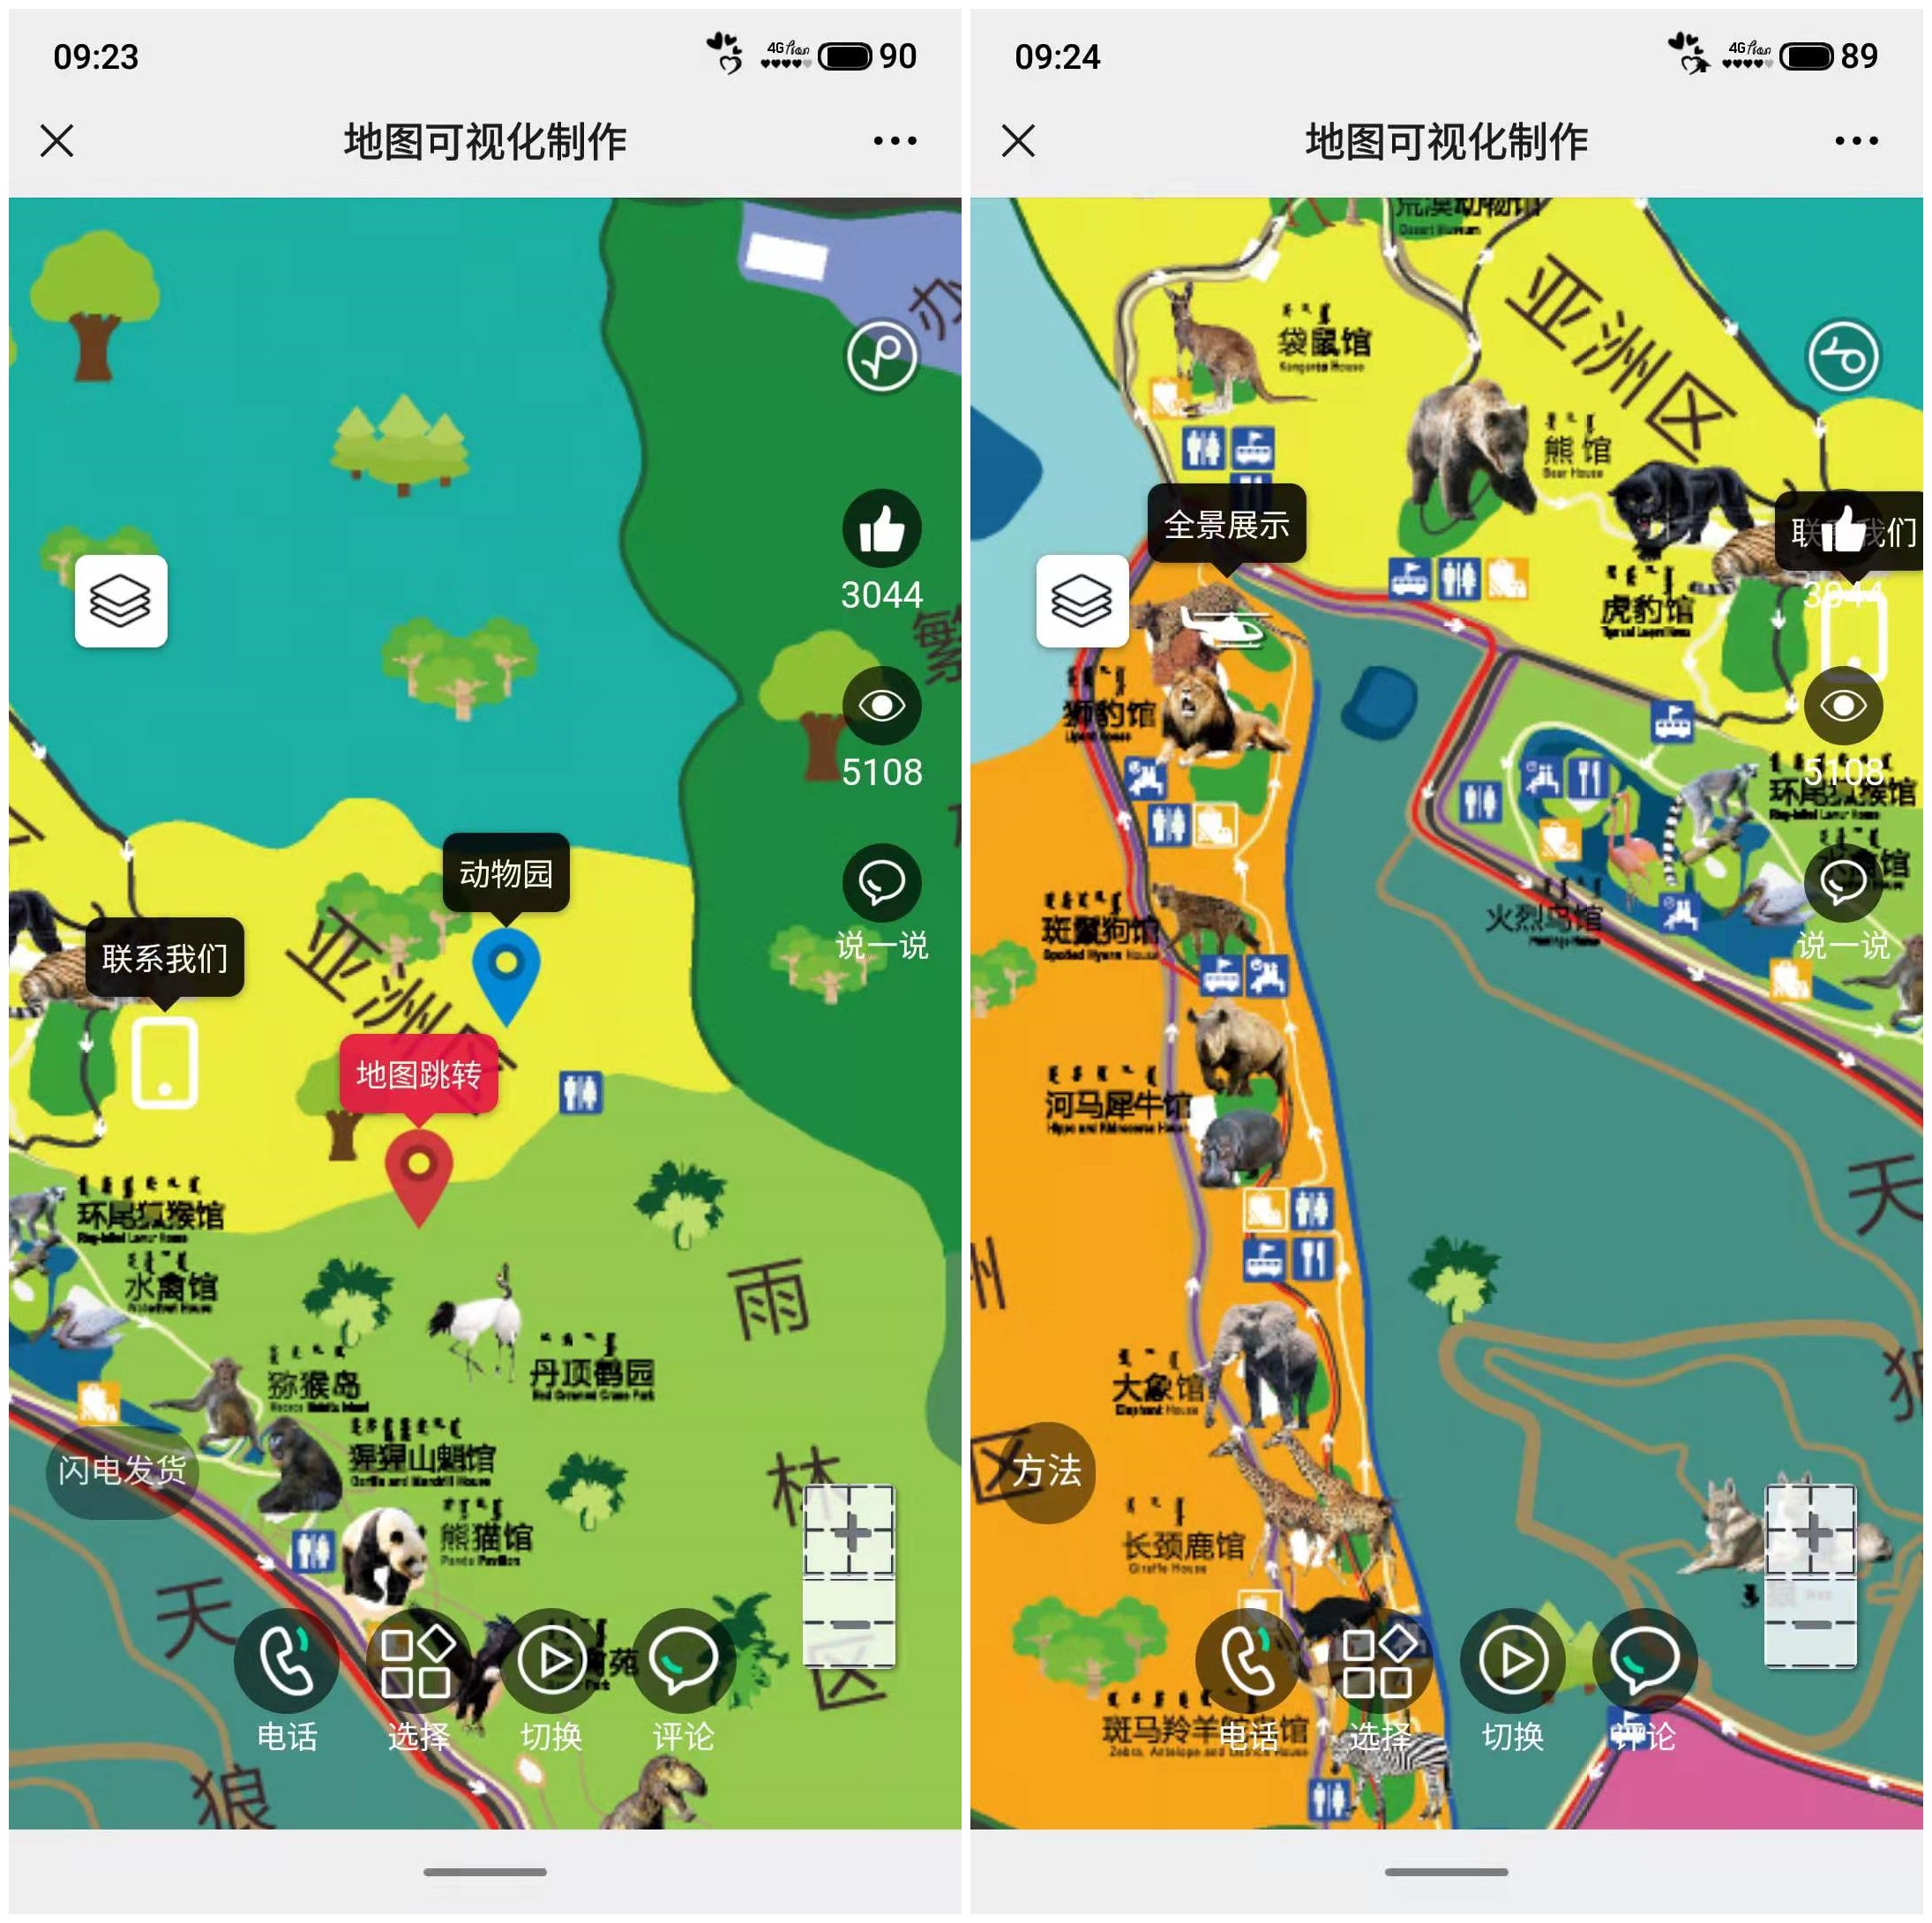 蓝果网络——景区动物园可视化地图制作系统开发